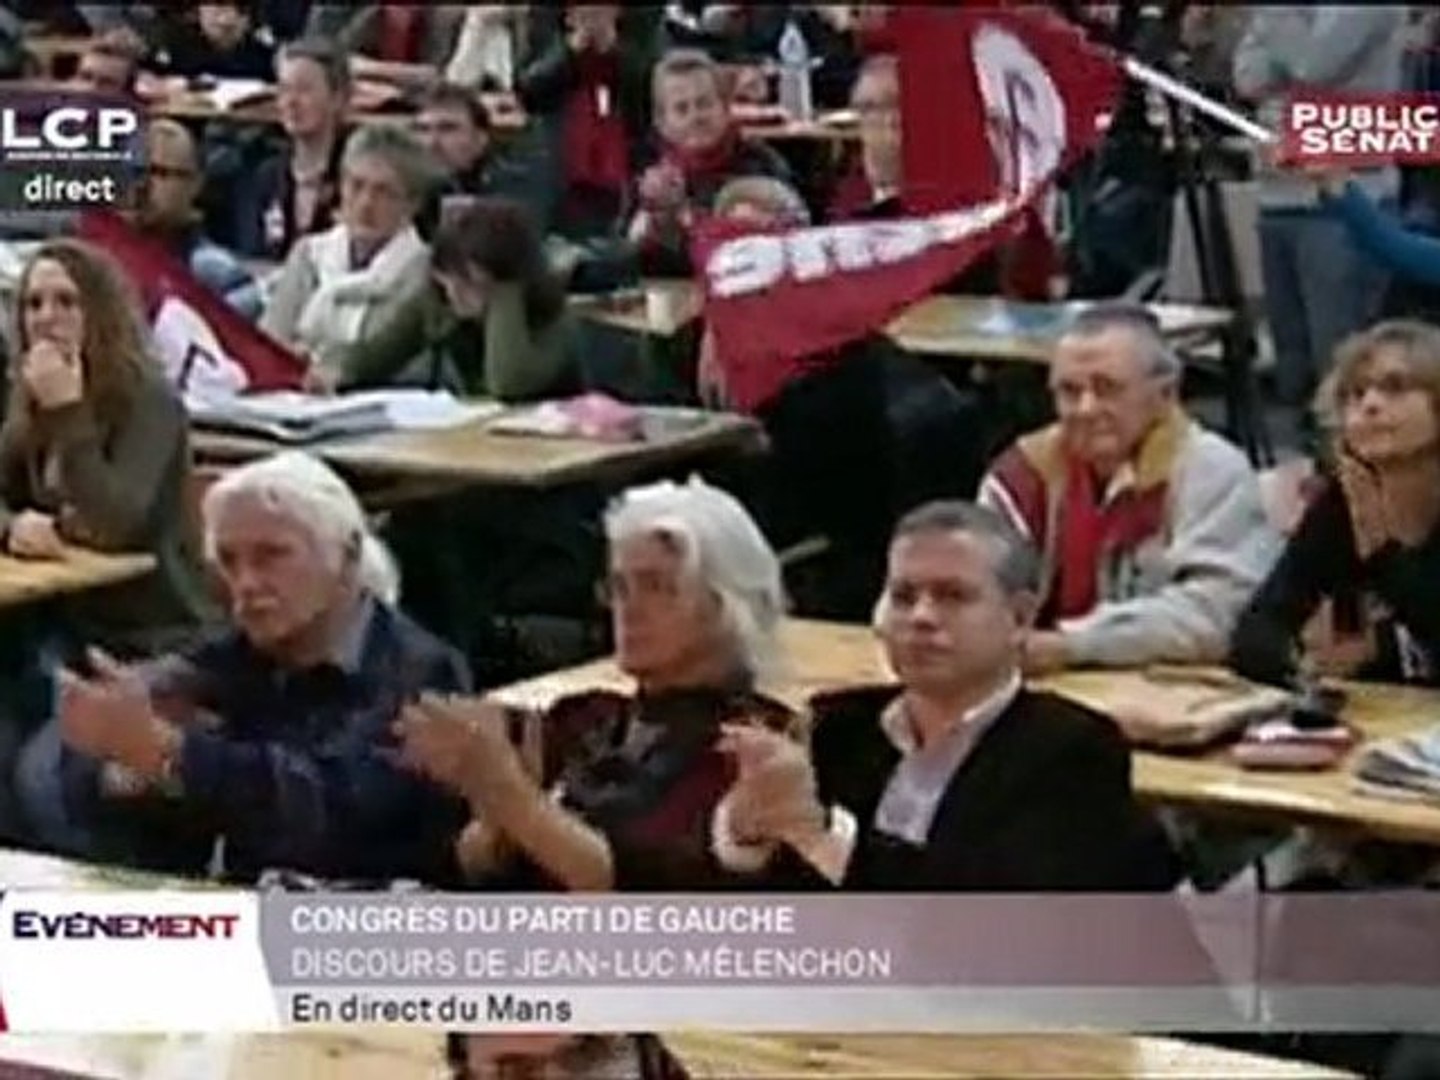 Le discours de Jean-Luc Mélenchon en direct sur LCP - Vidéo Dailymotion